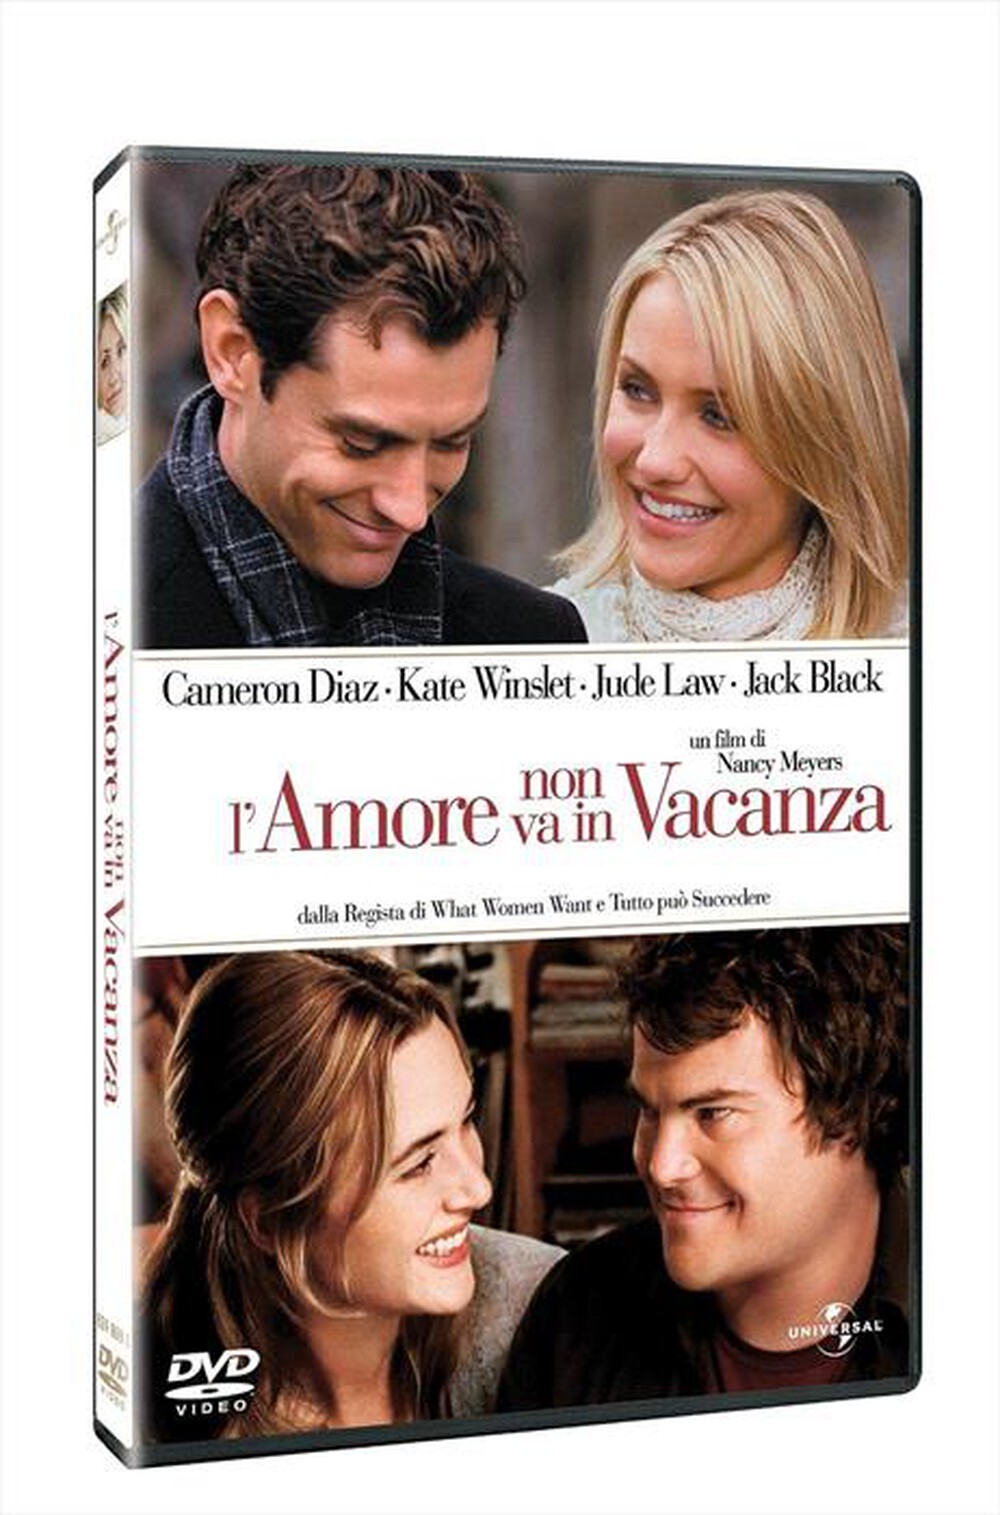 "WARNER HOME VIDEO - Amore Non Va In Vacanza (L')"